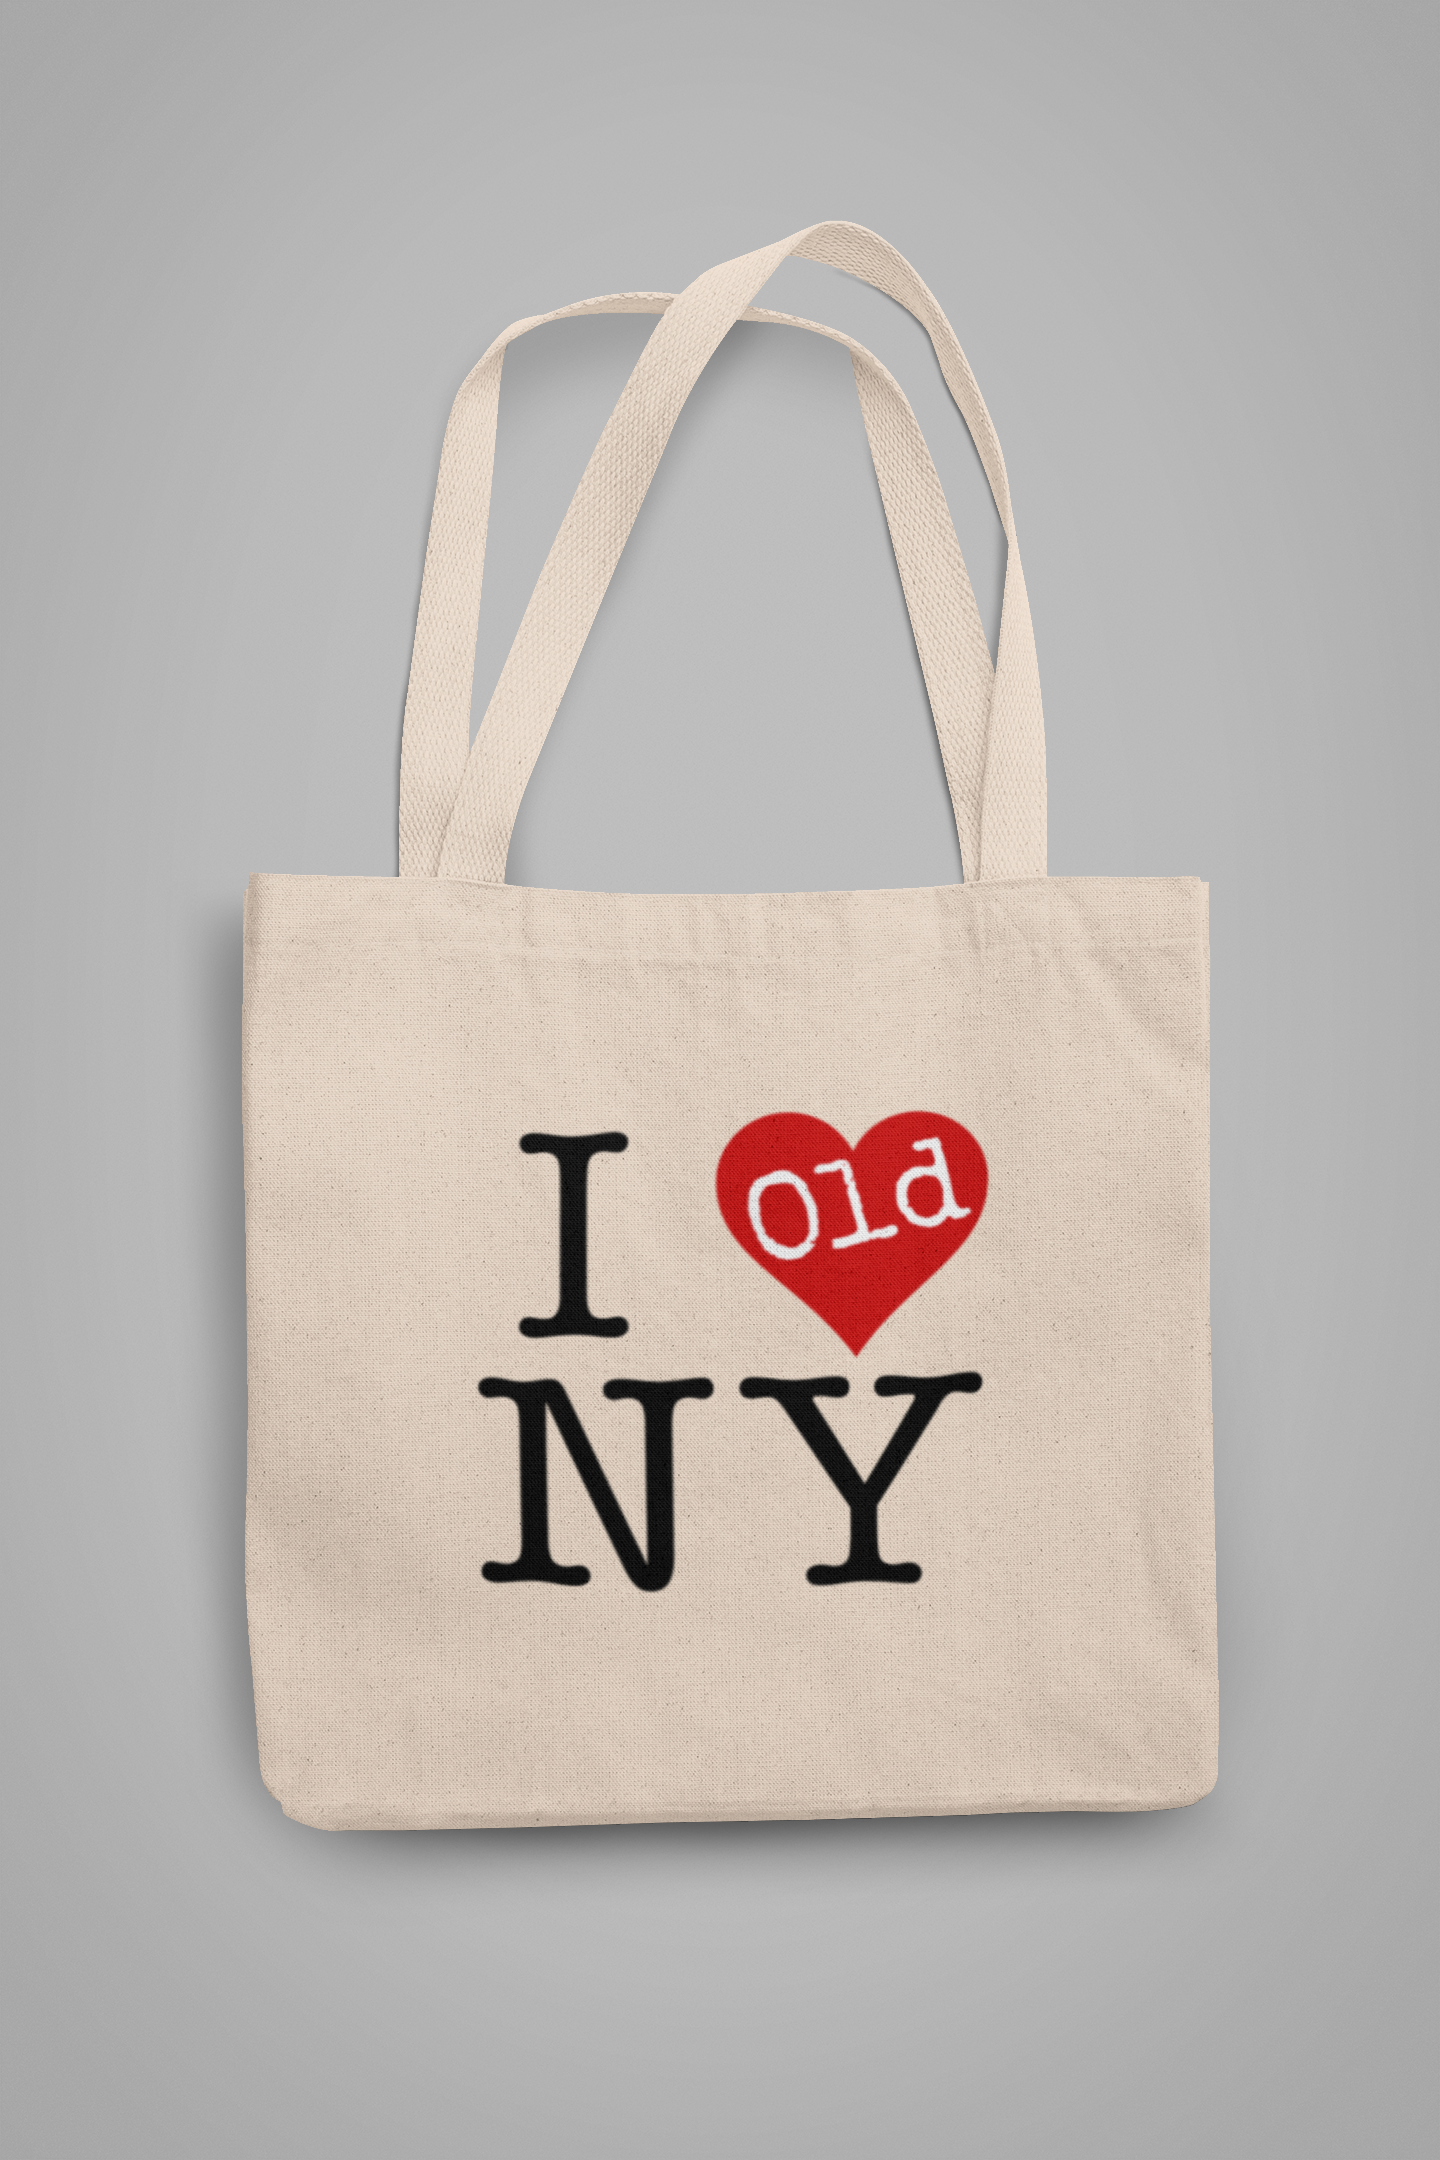 I Heart Old NY Tote Bag